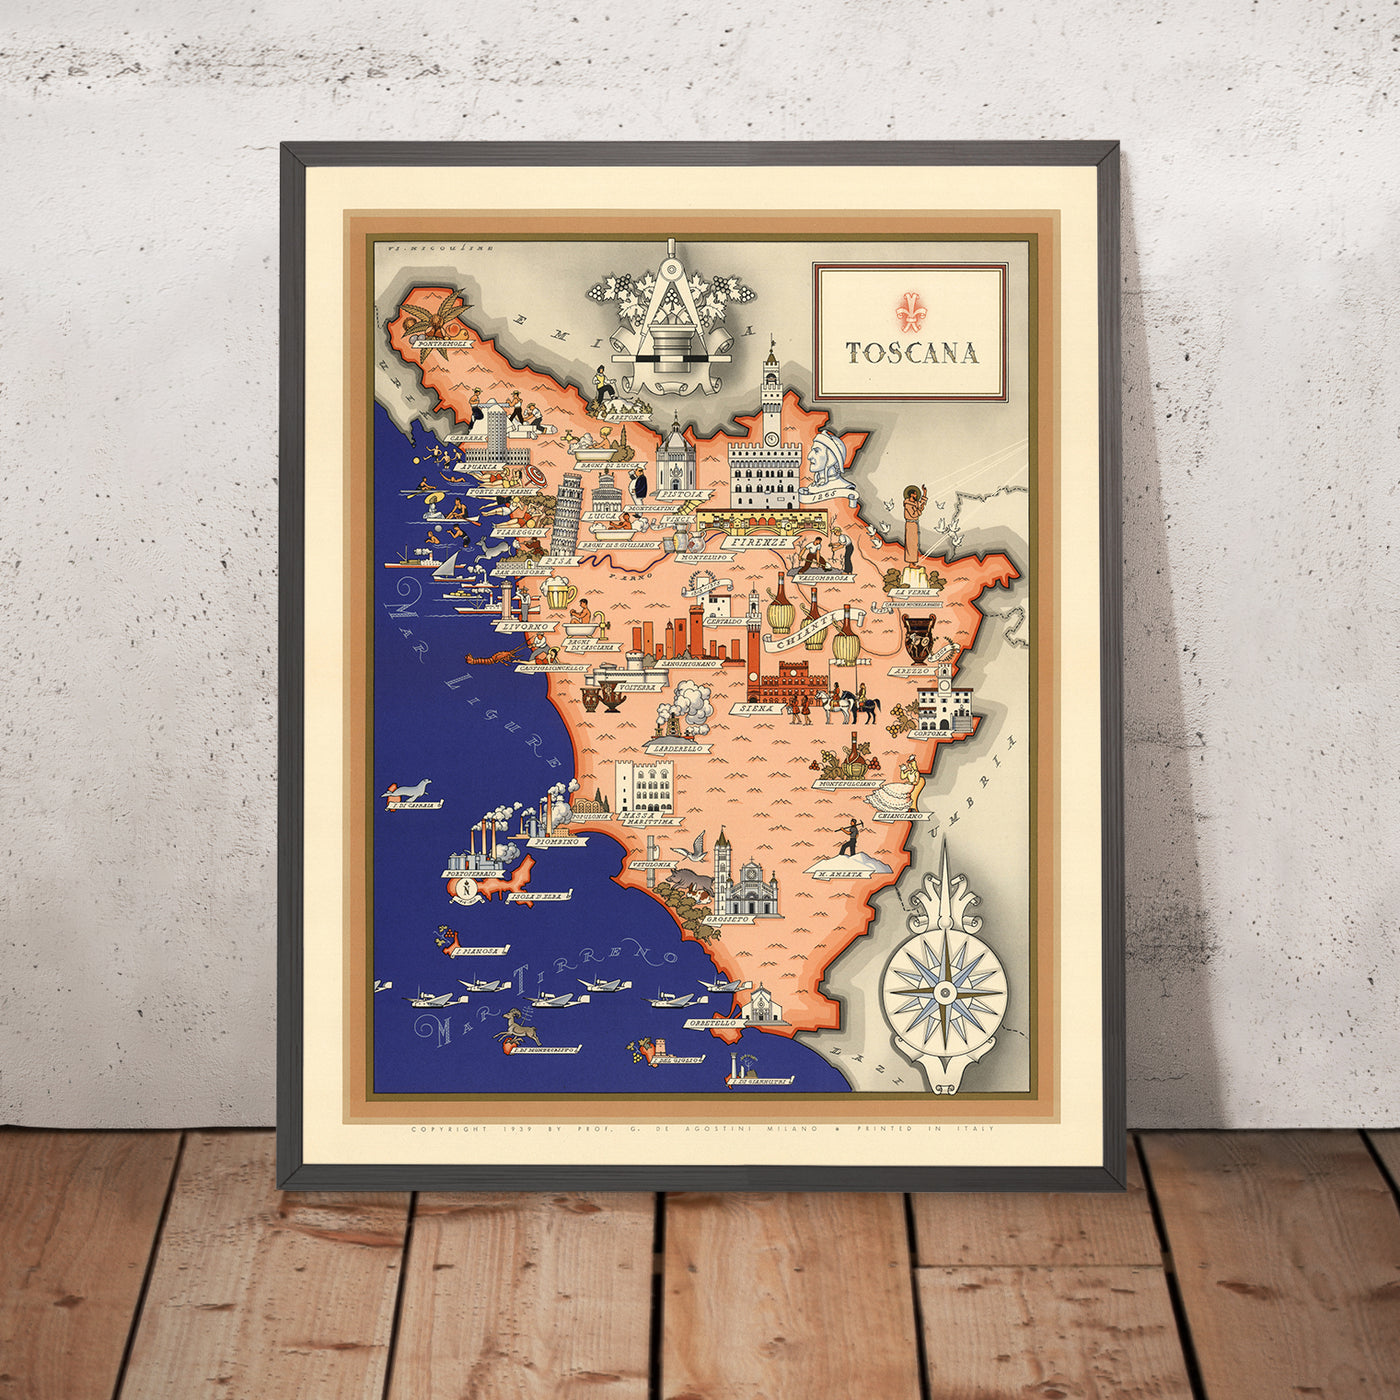 Alte Bildkarte der Toskana von De Agostini, 1938: Pisa, Florenz, Siena, Nationalpark Toskanischer Archipel, Nationalpark Foreste Casentinesi